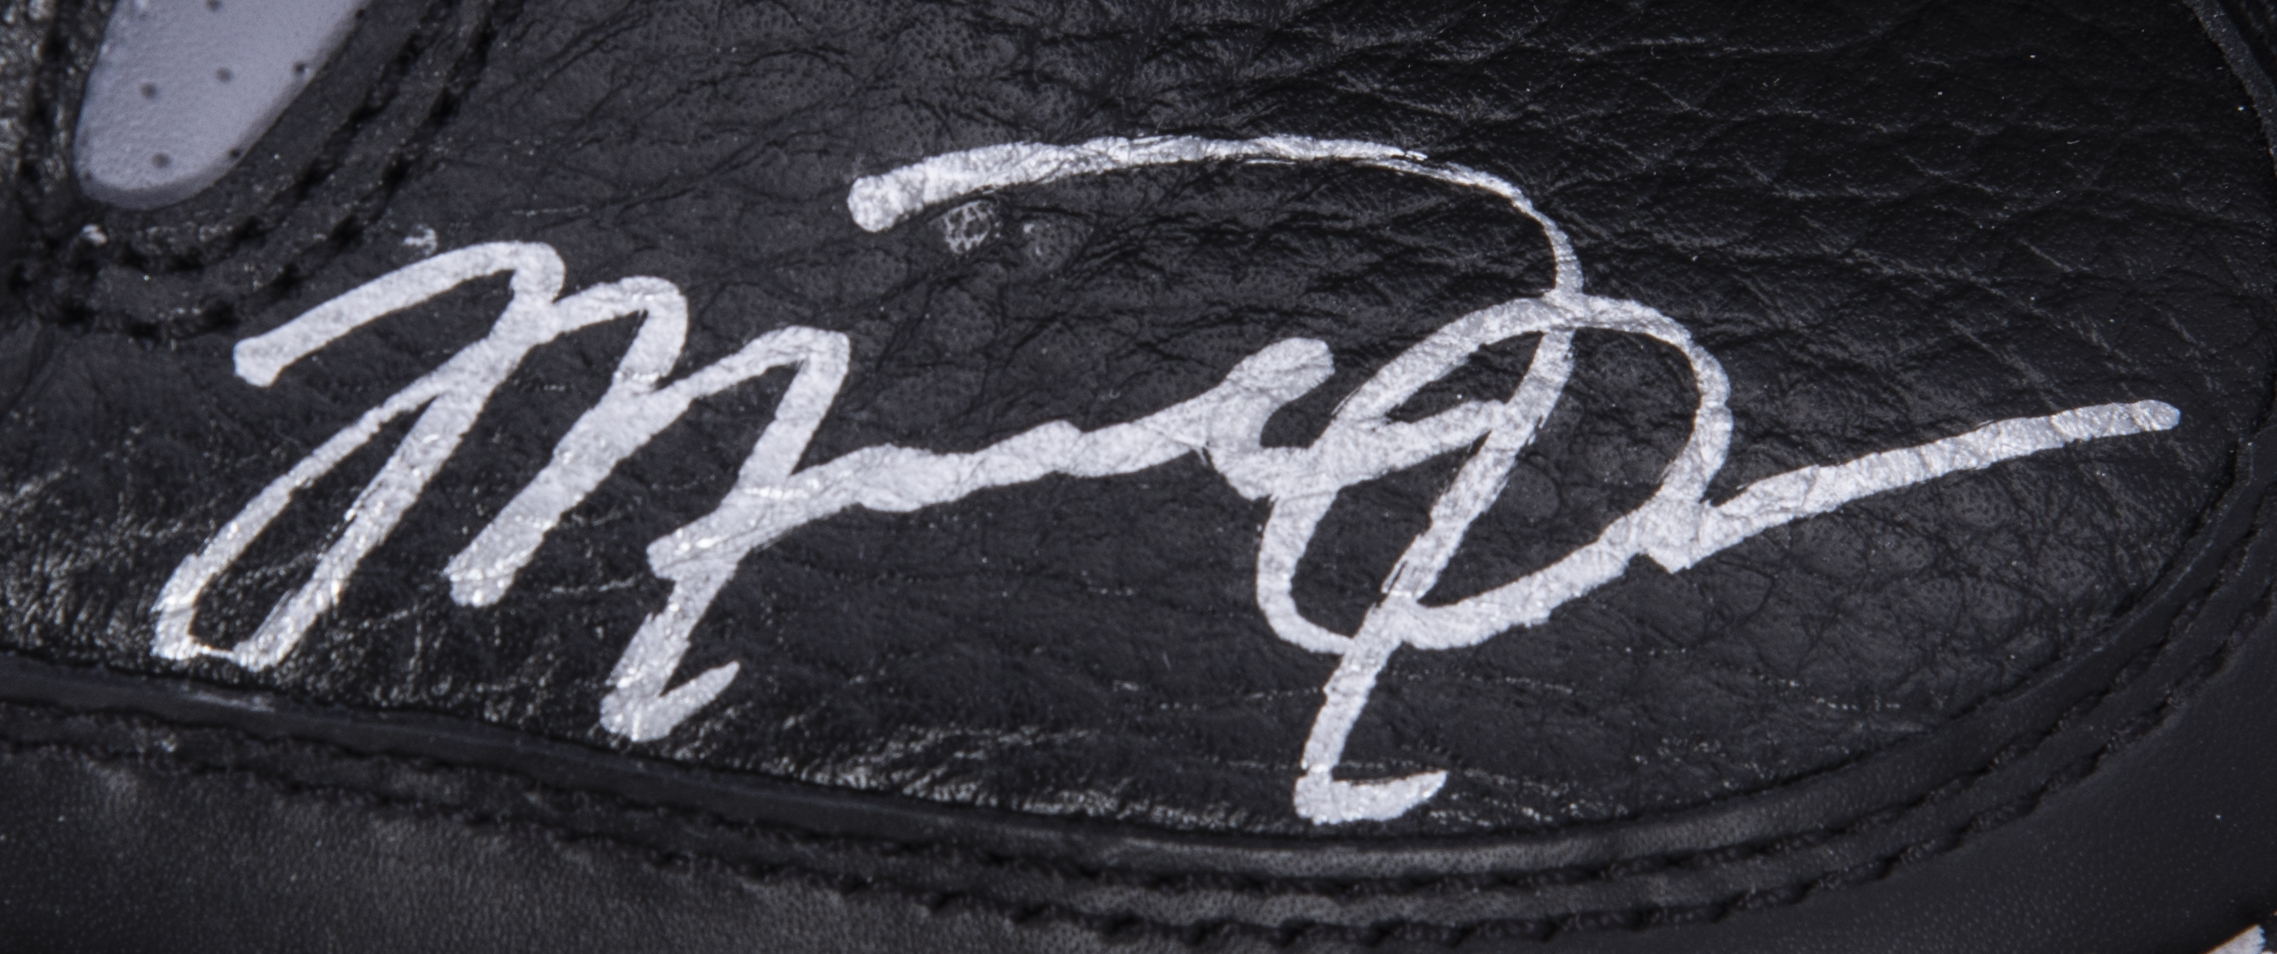 Lot Detail - Michael Jordan Signed Pair of Air Jordan III Retro ...